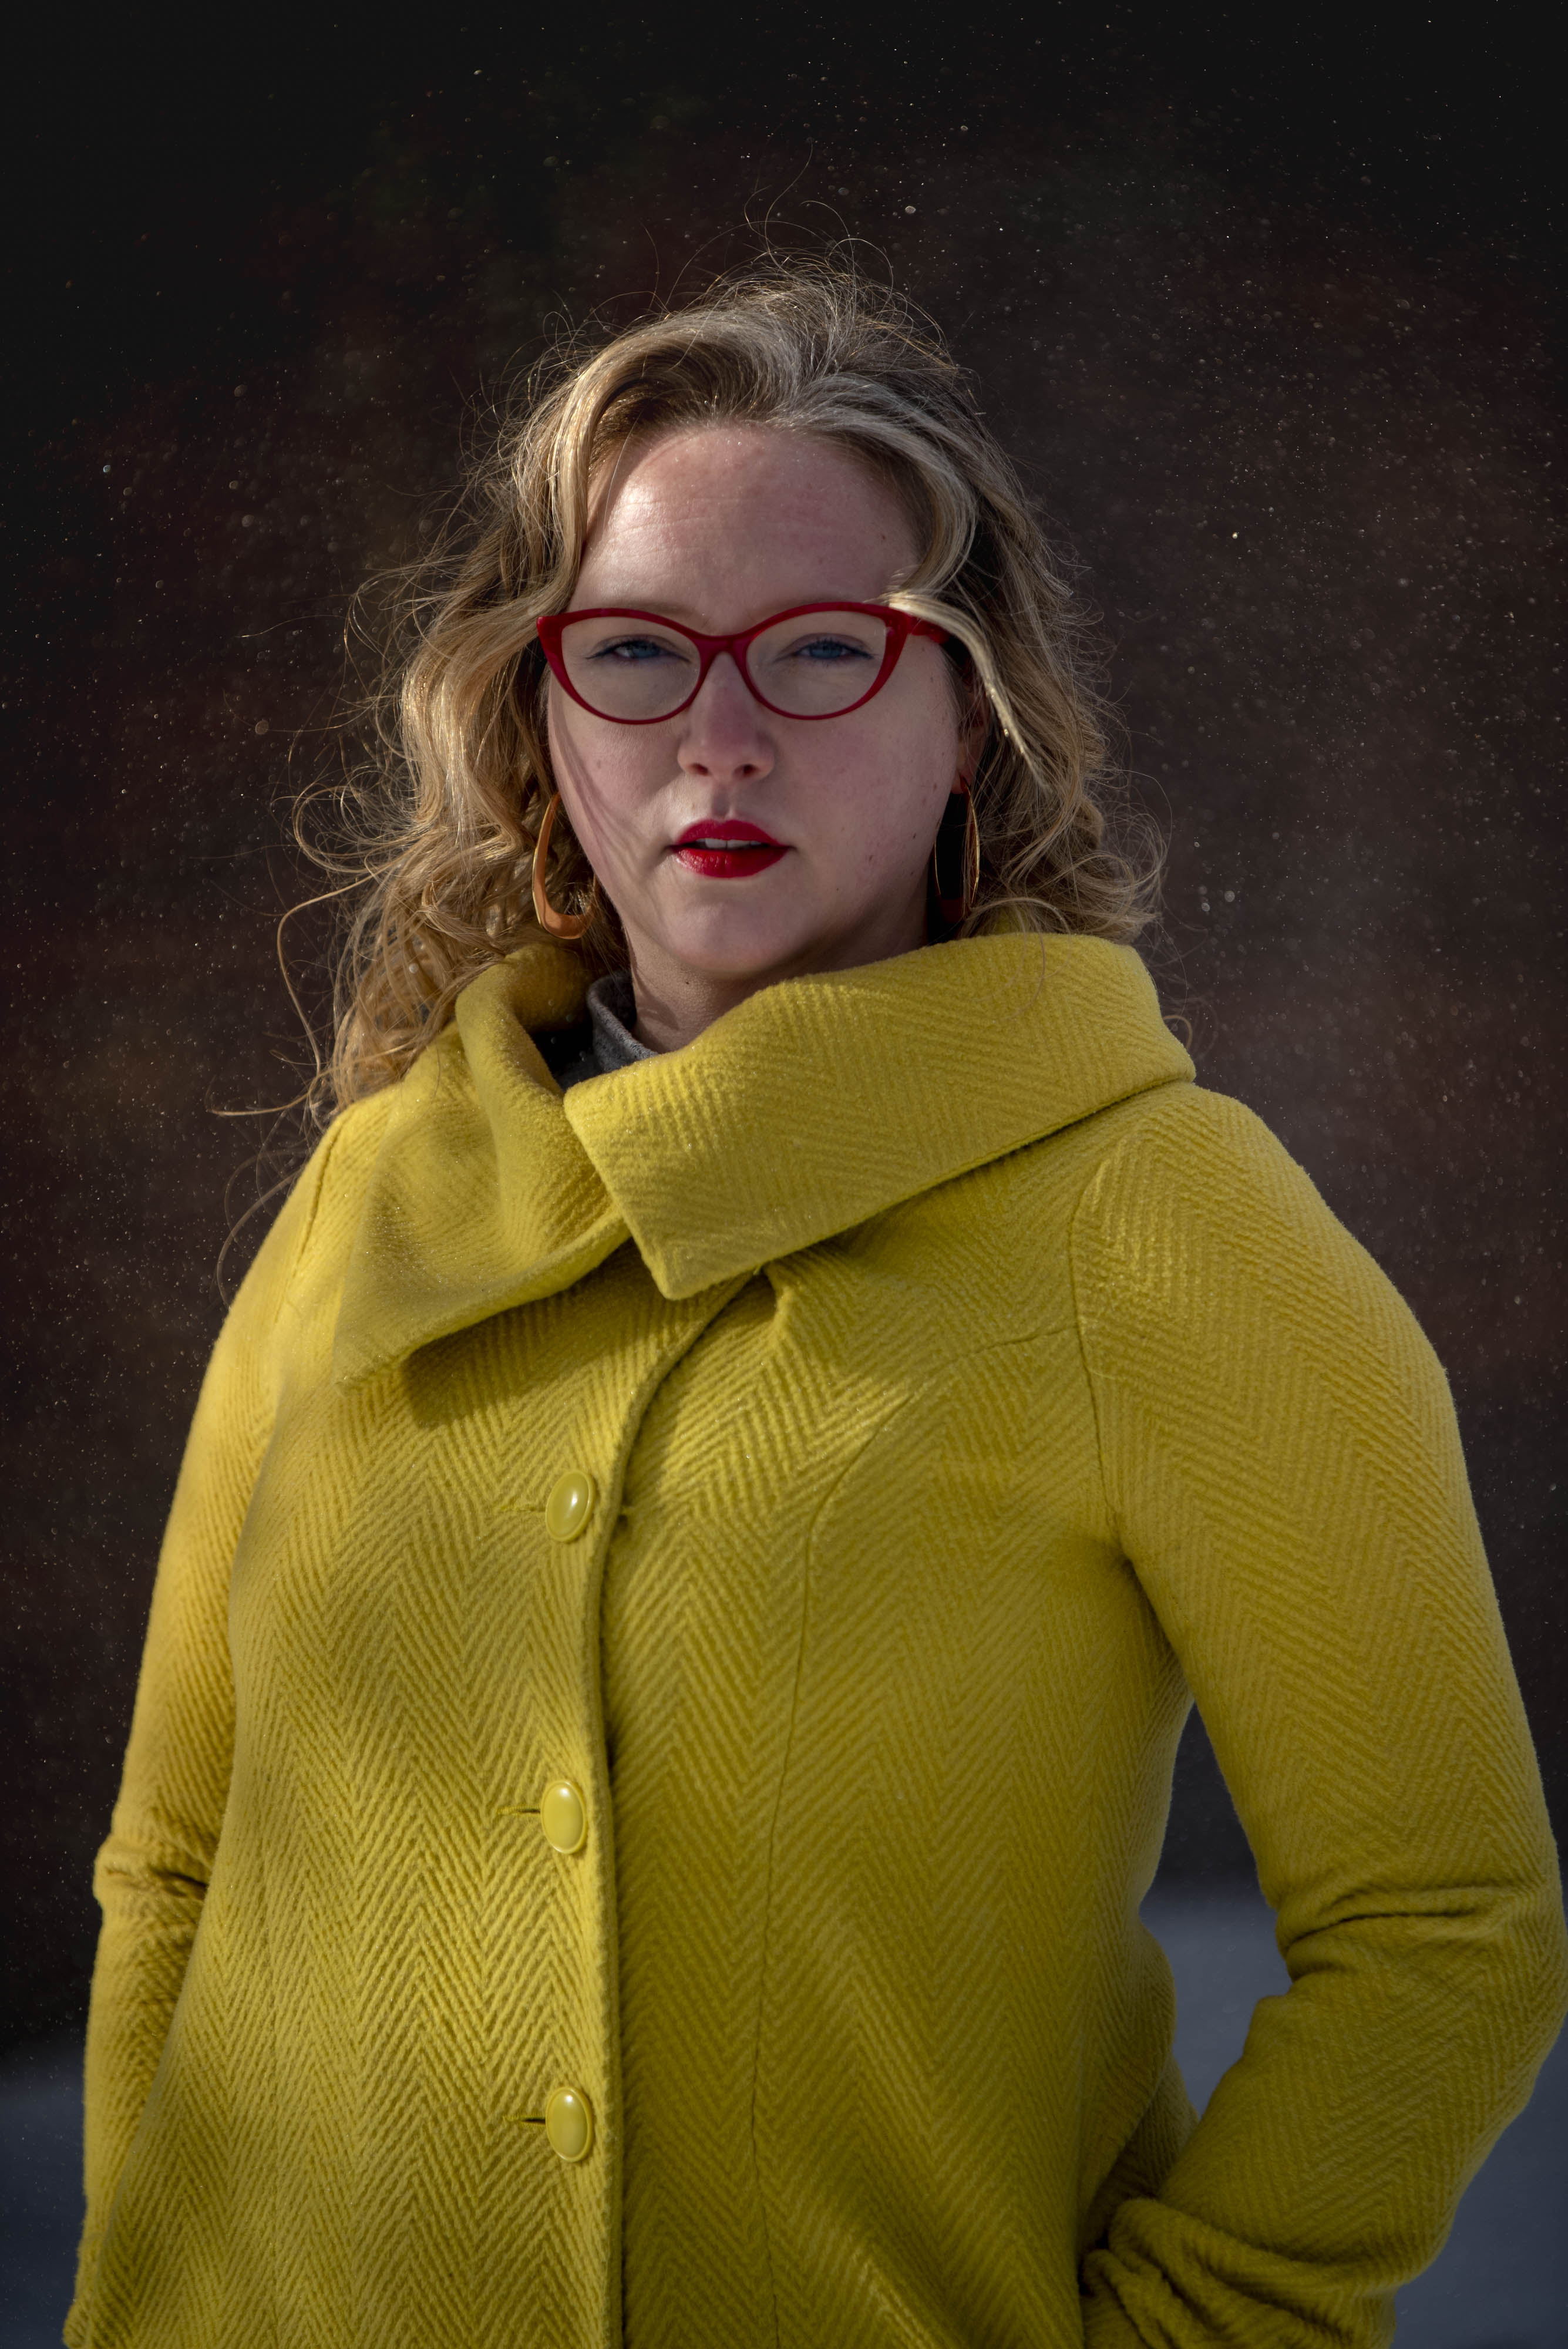 Une femme blanche aux longs cheveux blonds se tient à l'extérieur, regardant calmement la caméra. Elle porte des lunettes à monture rouge, du rouge à lèvres rouge et un manteau à chevrons jaune vif. 